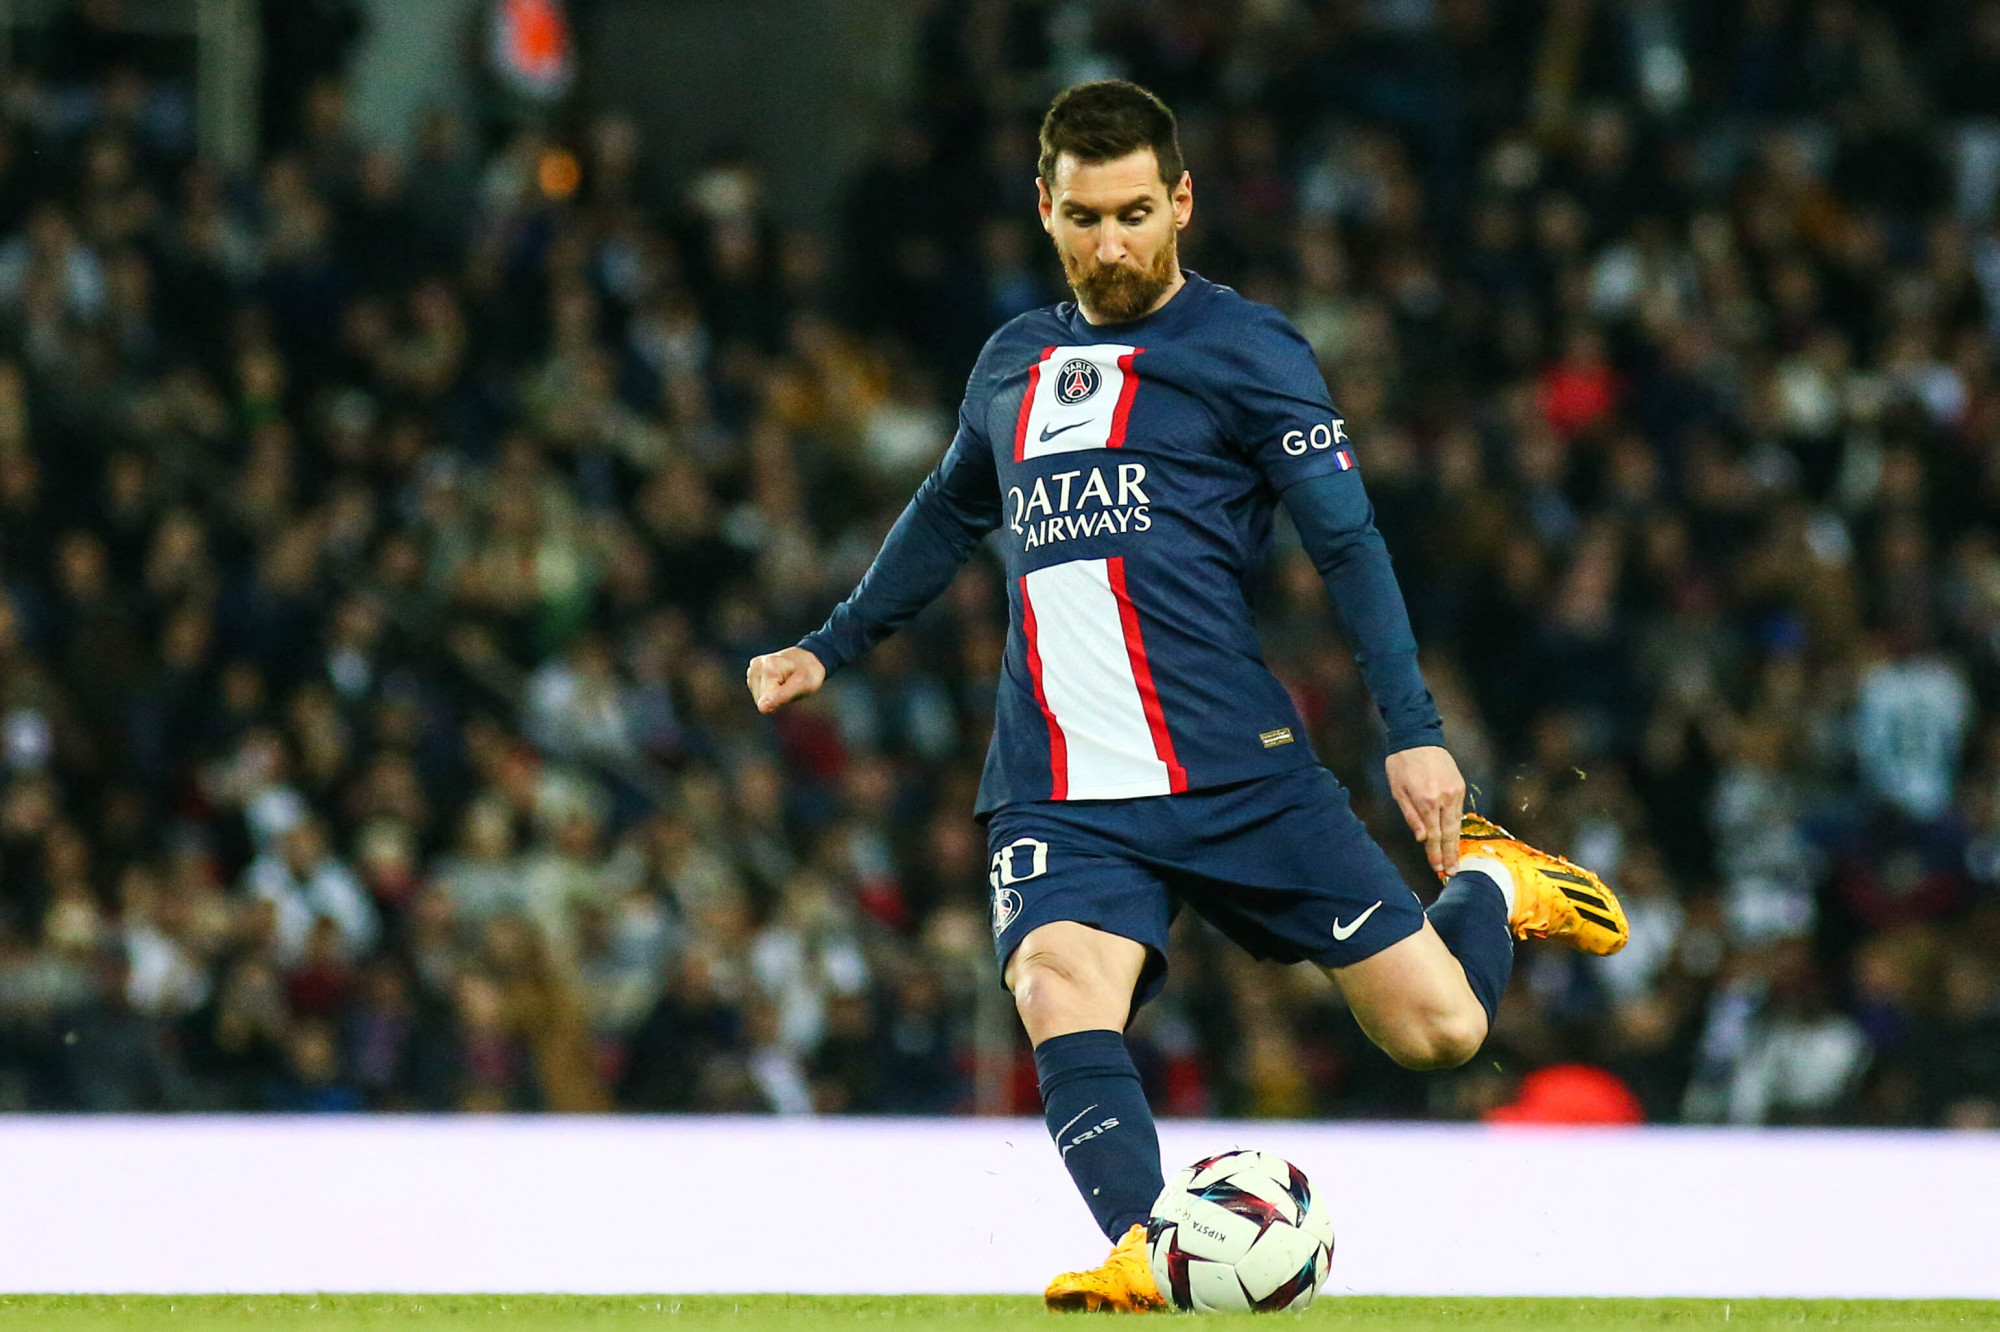 Amit eddig is biztosra lehetett venni, az mostantól még biztosabb: Lionel Messi nem marad Párizsban